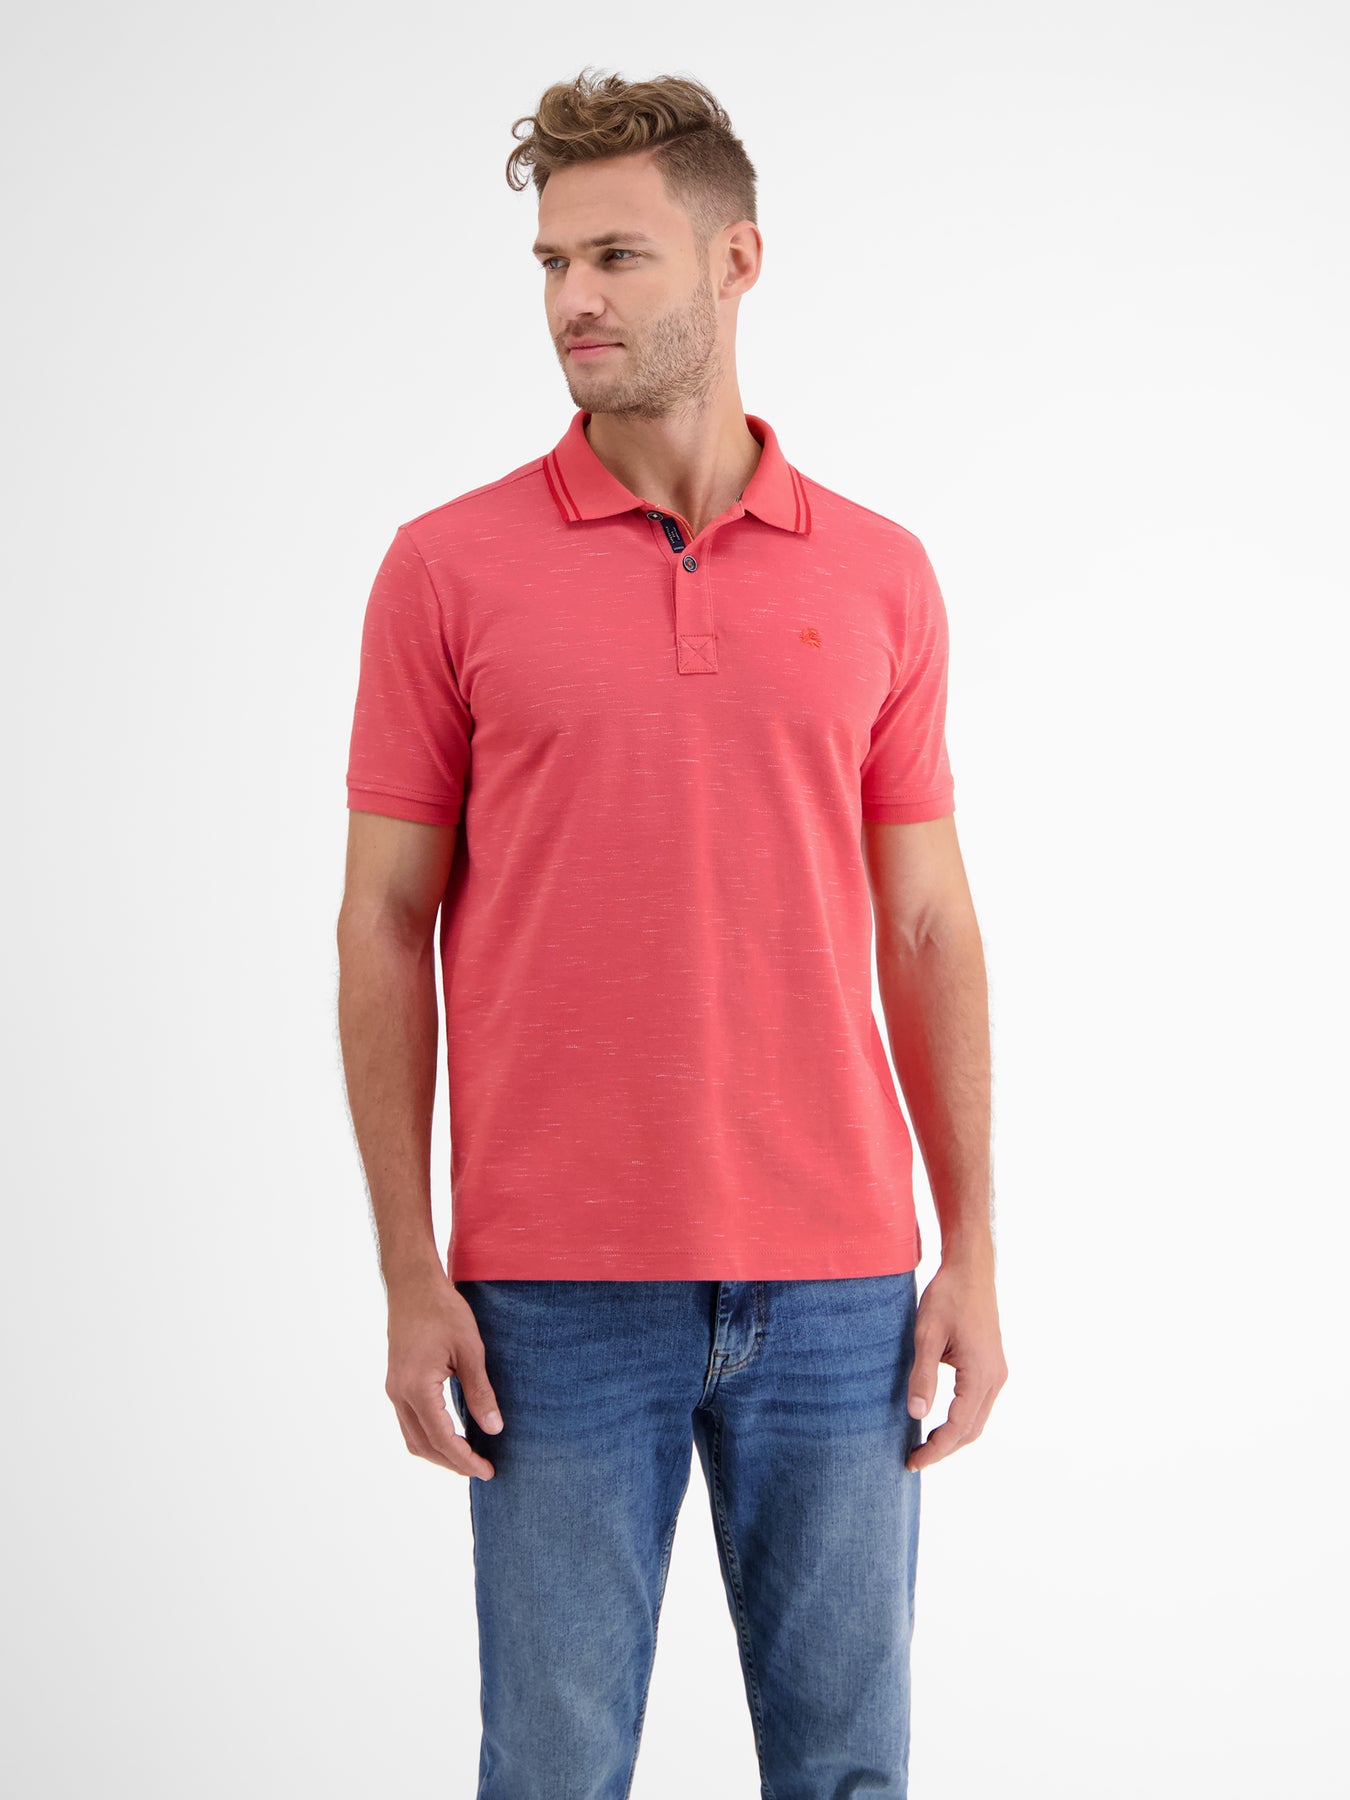 SHOP – Polo LERROS in shirt two-tone piqué